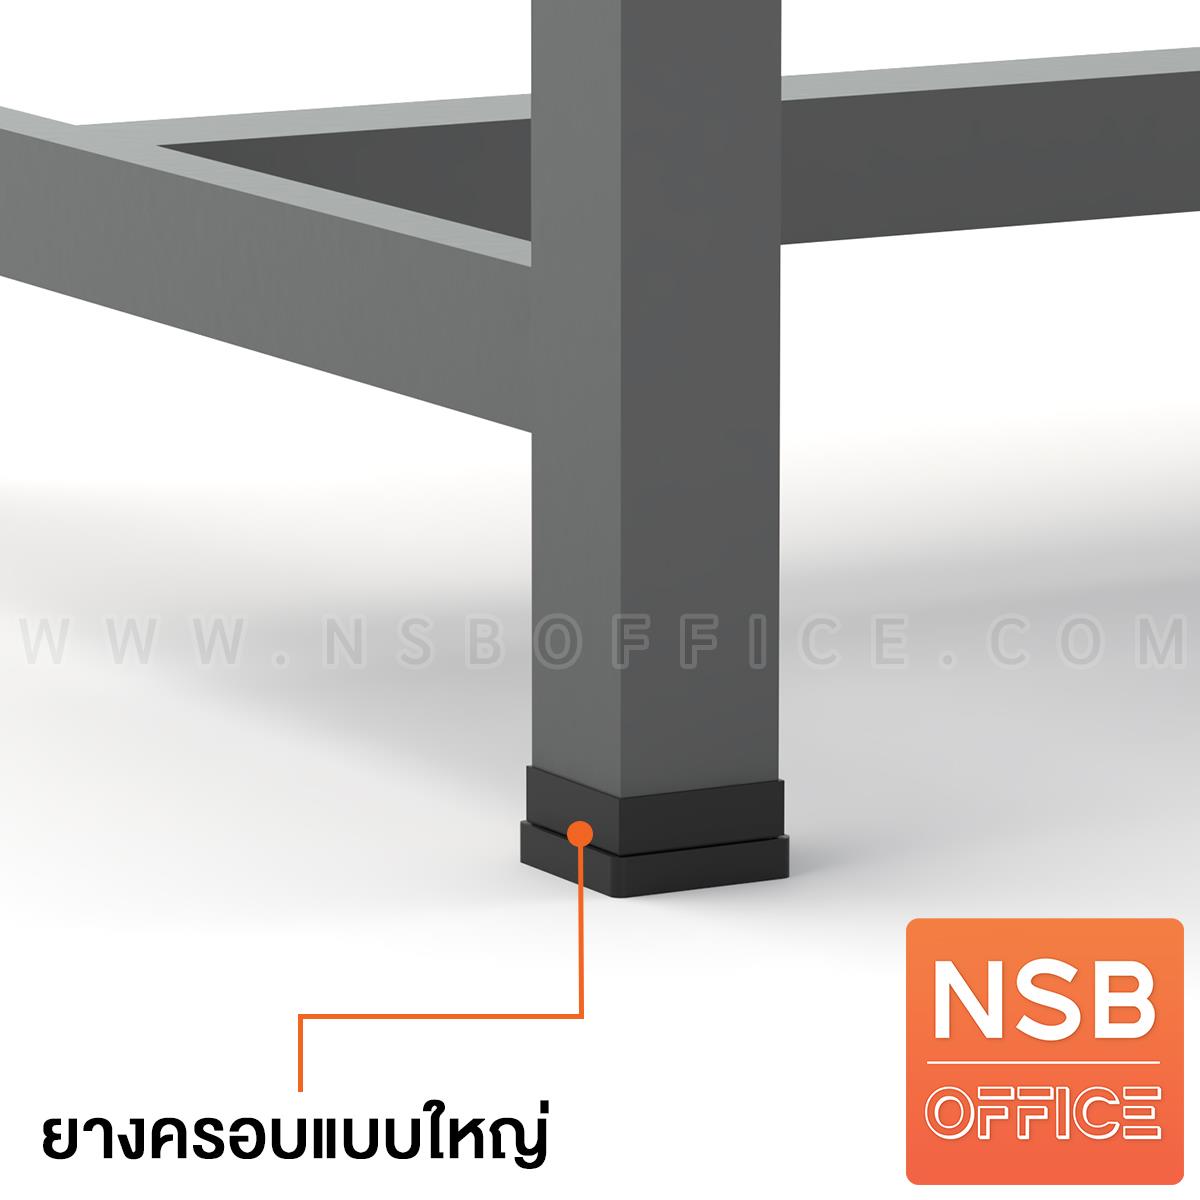 โต๊ะกันสั่น  รุ่น Purecare l (เพียวแคร์ 1) ขนาด 240W, 300W, 360W cm. หน้าท็อป HPL และ คอมแพคลามิเนต  